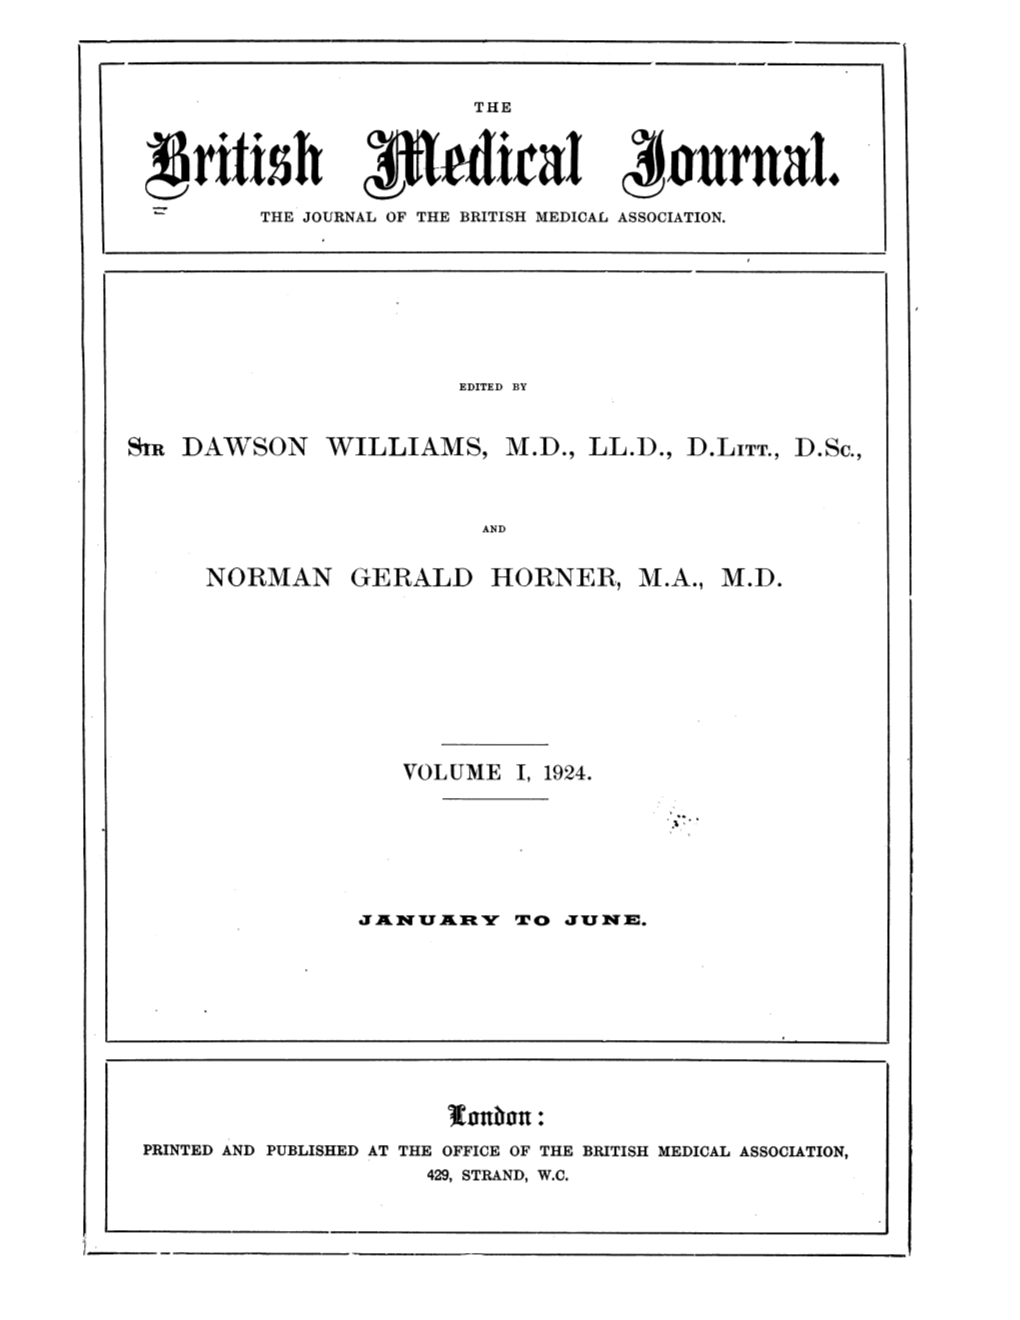 Xjrtttsh Kadka ,Iuuruaal. the JOURNAL of the BRITISH MEDICAL ASSOCIATION